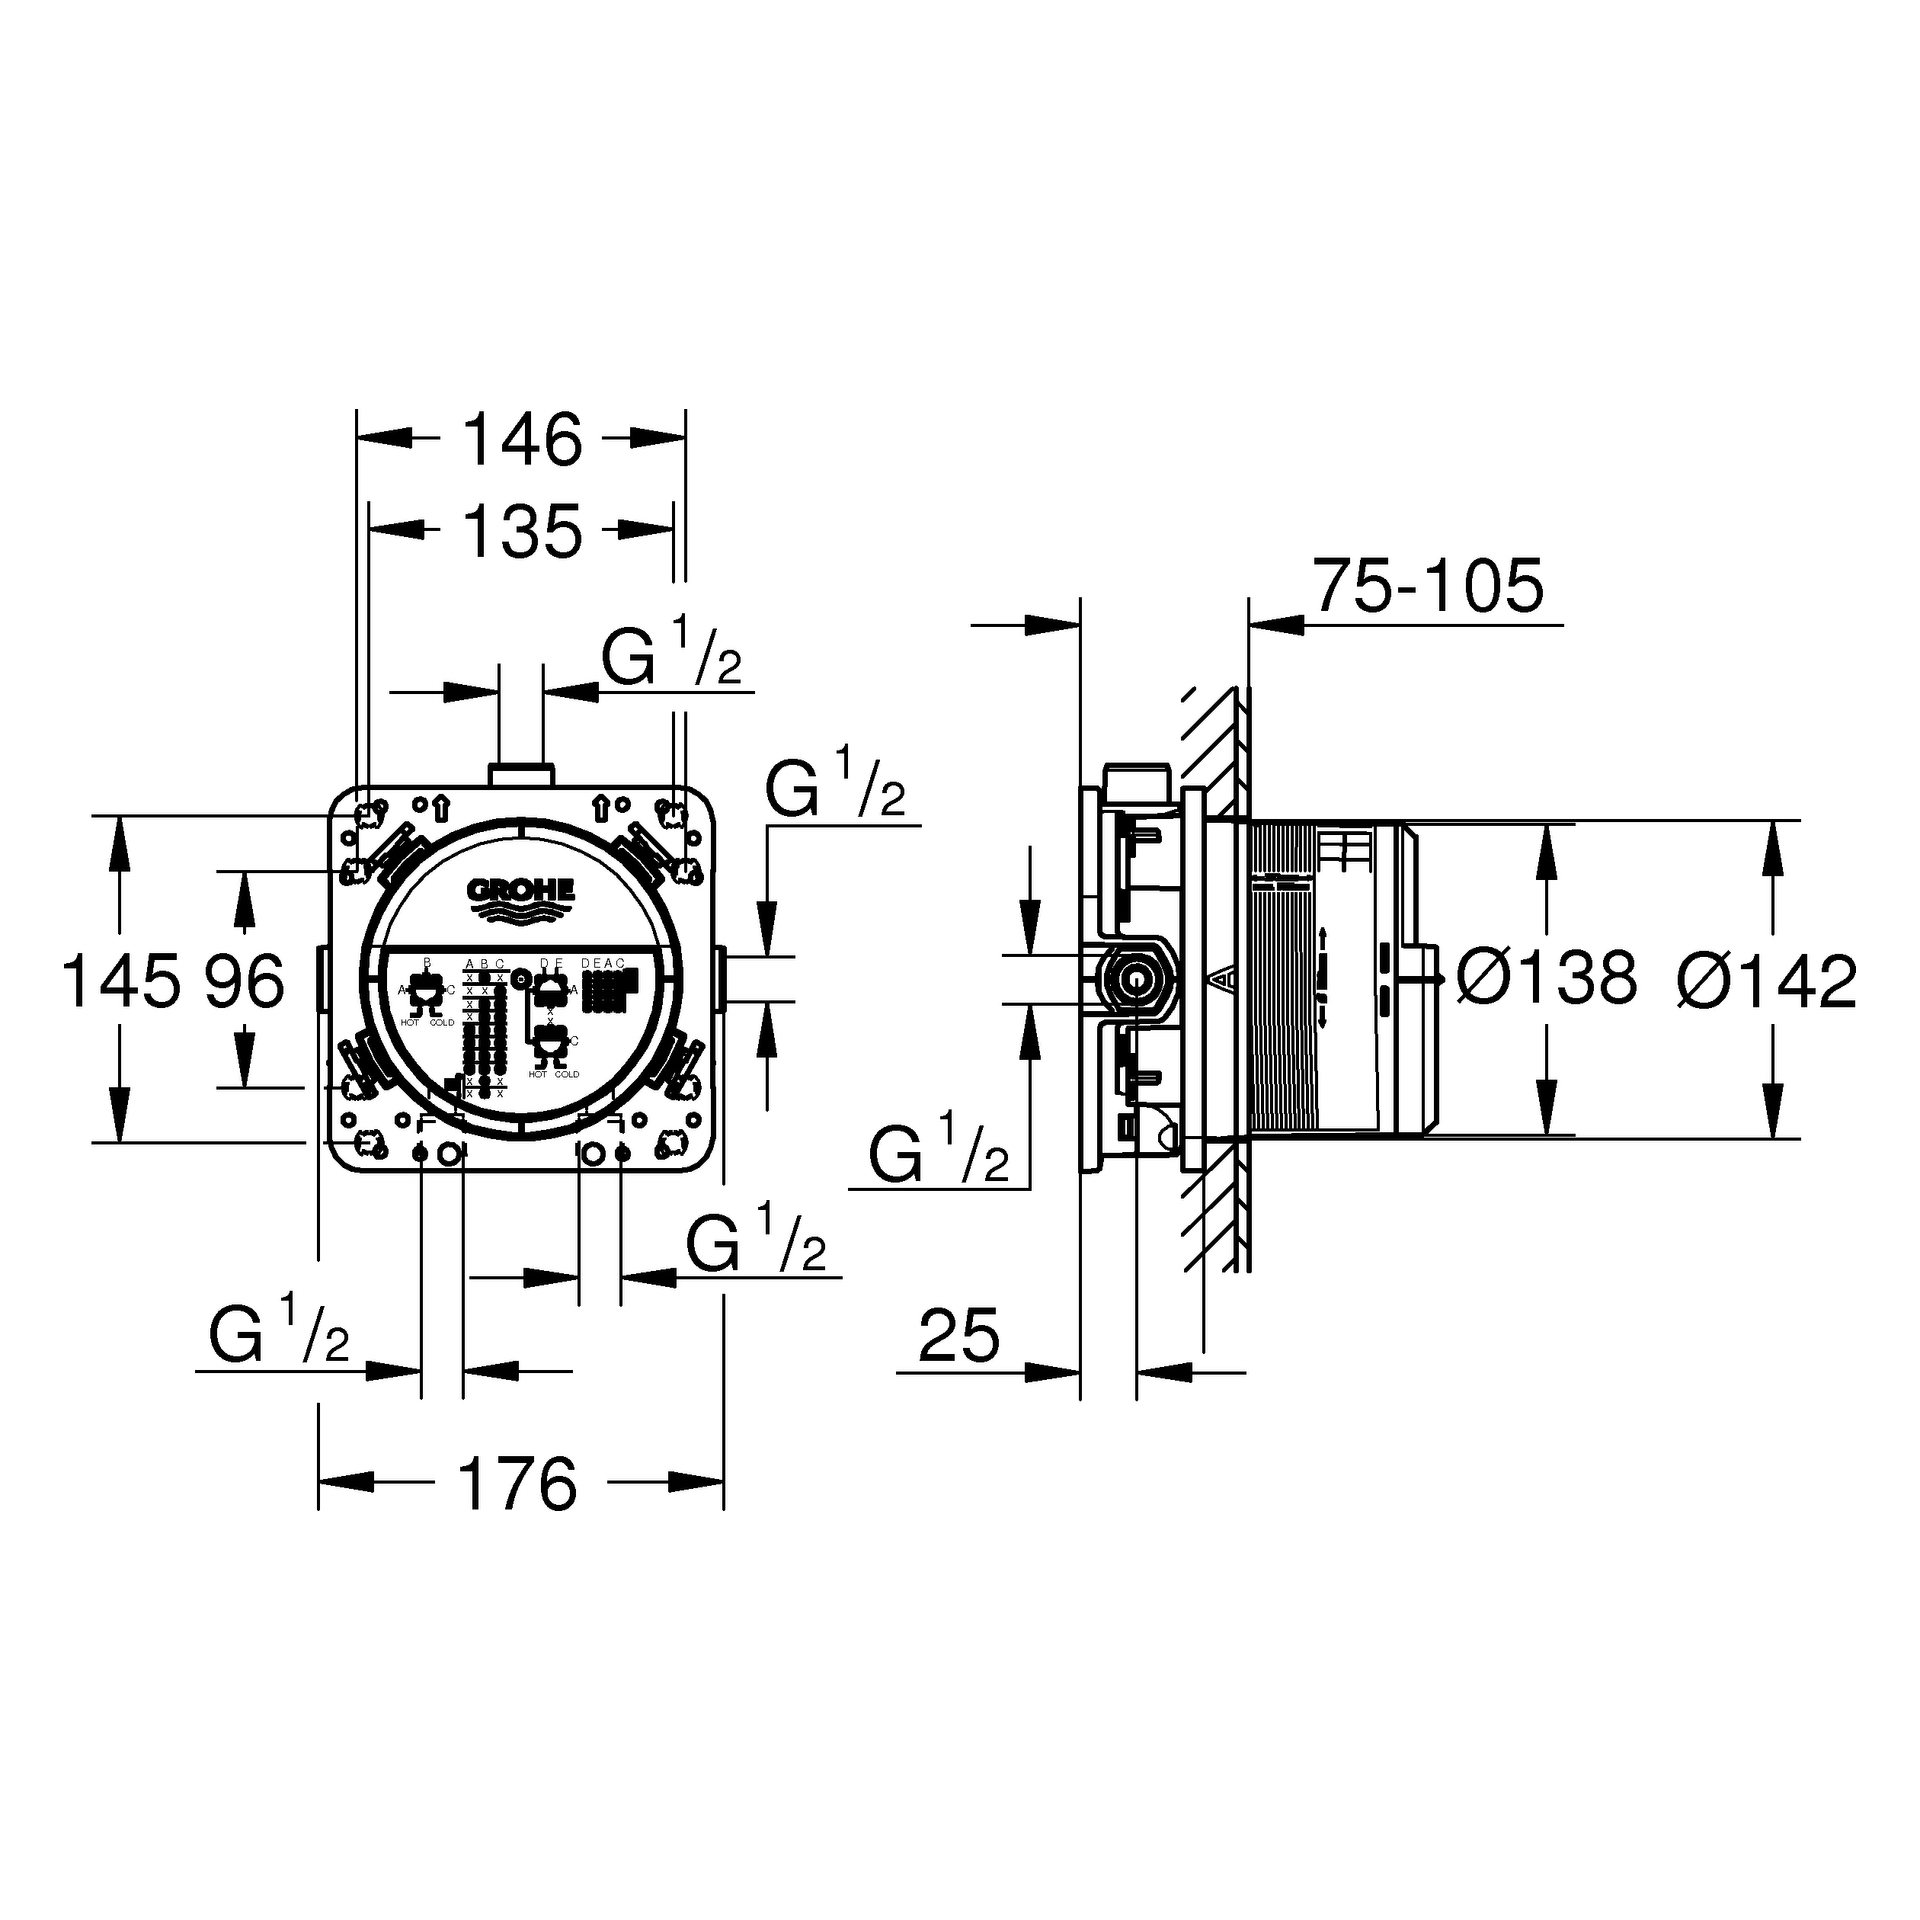 Universal Unterputz-Einbaukörper Rapido SmartBox 35604, DN 15, für Nass- und Trockenausbau, 3 Abgänge 1/2'', 2 Zuläufe unten, 1/2'', Einbautiefe 75-105 mm, Professional Edition